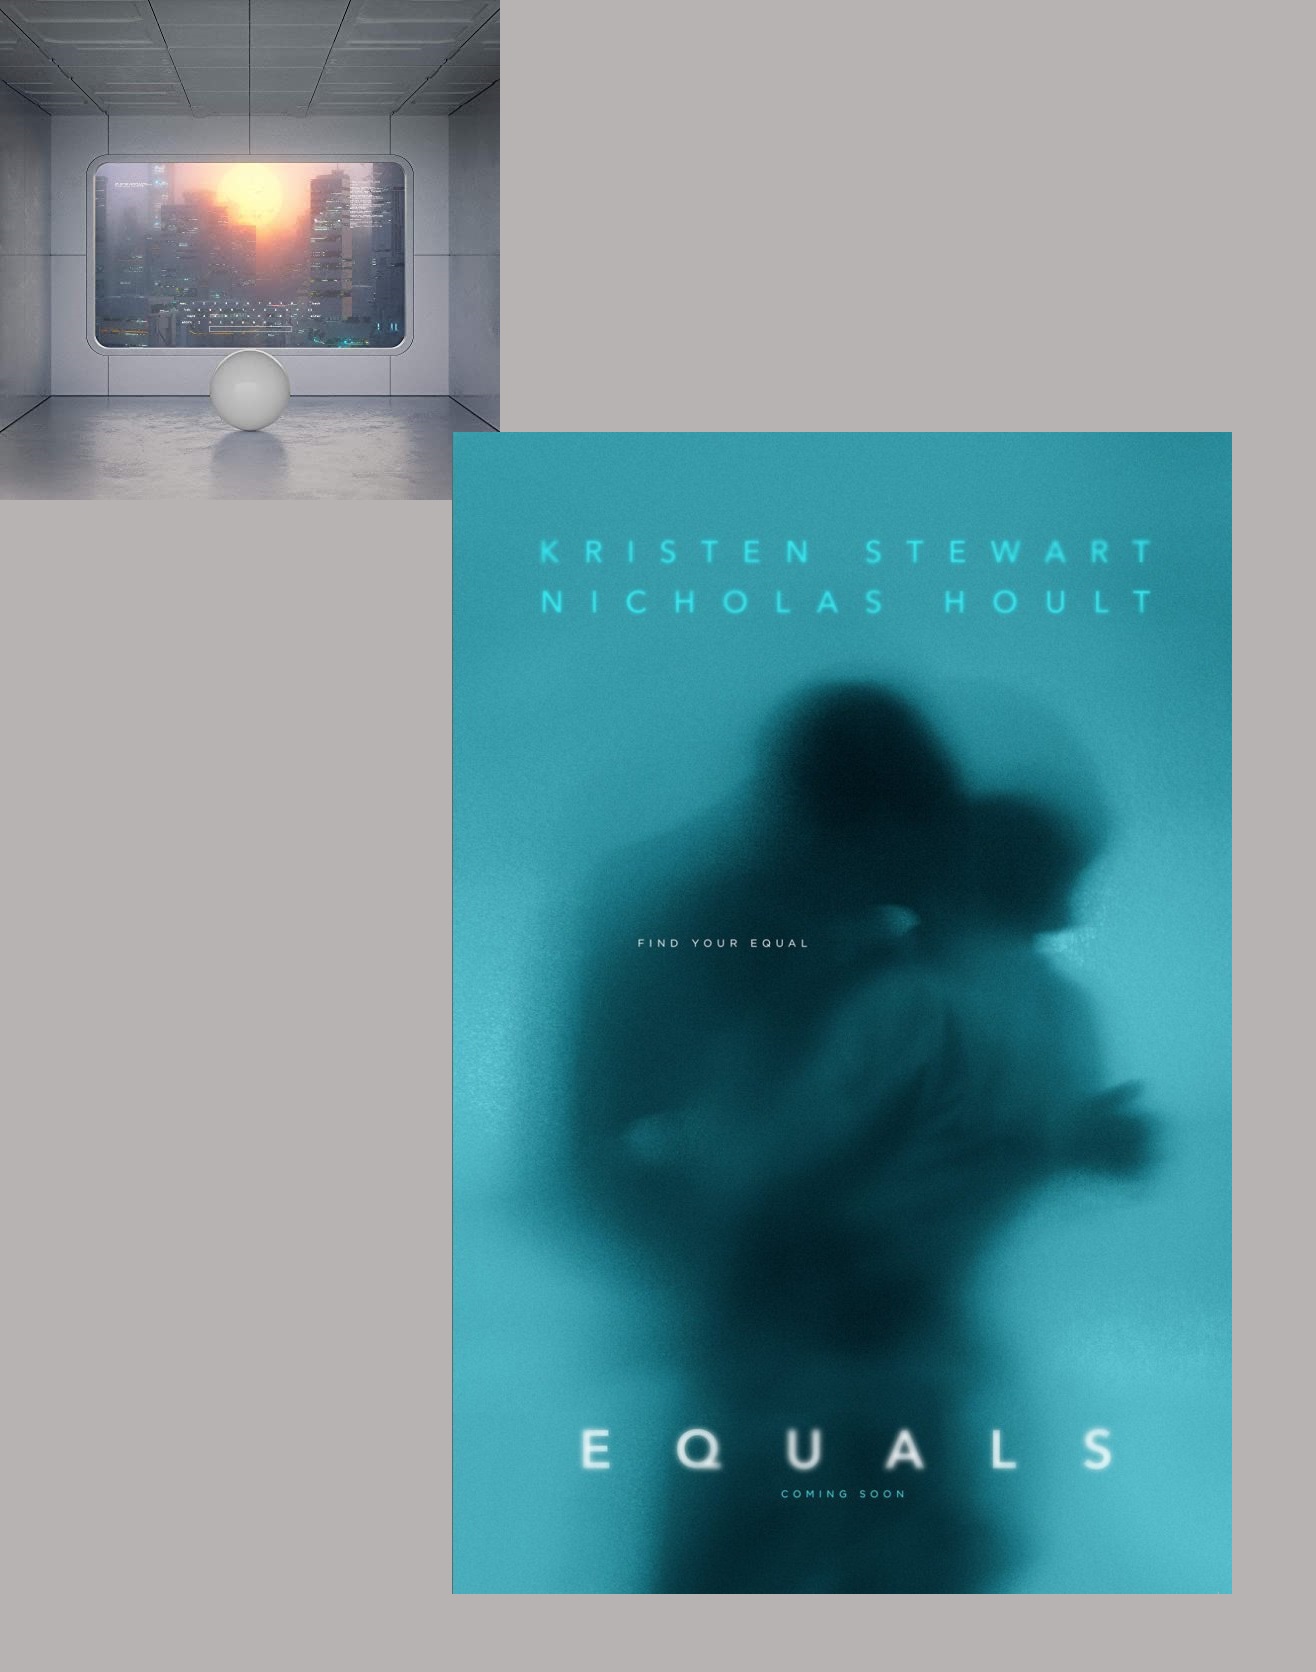 Equals (2016)